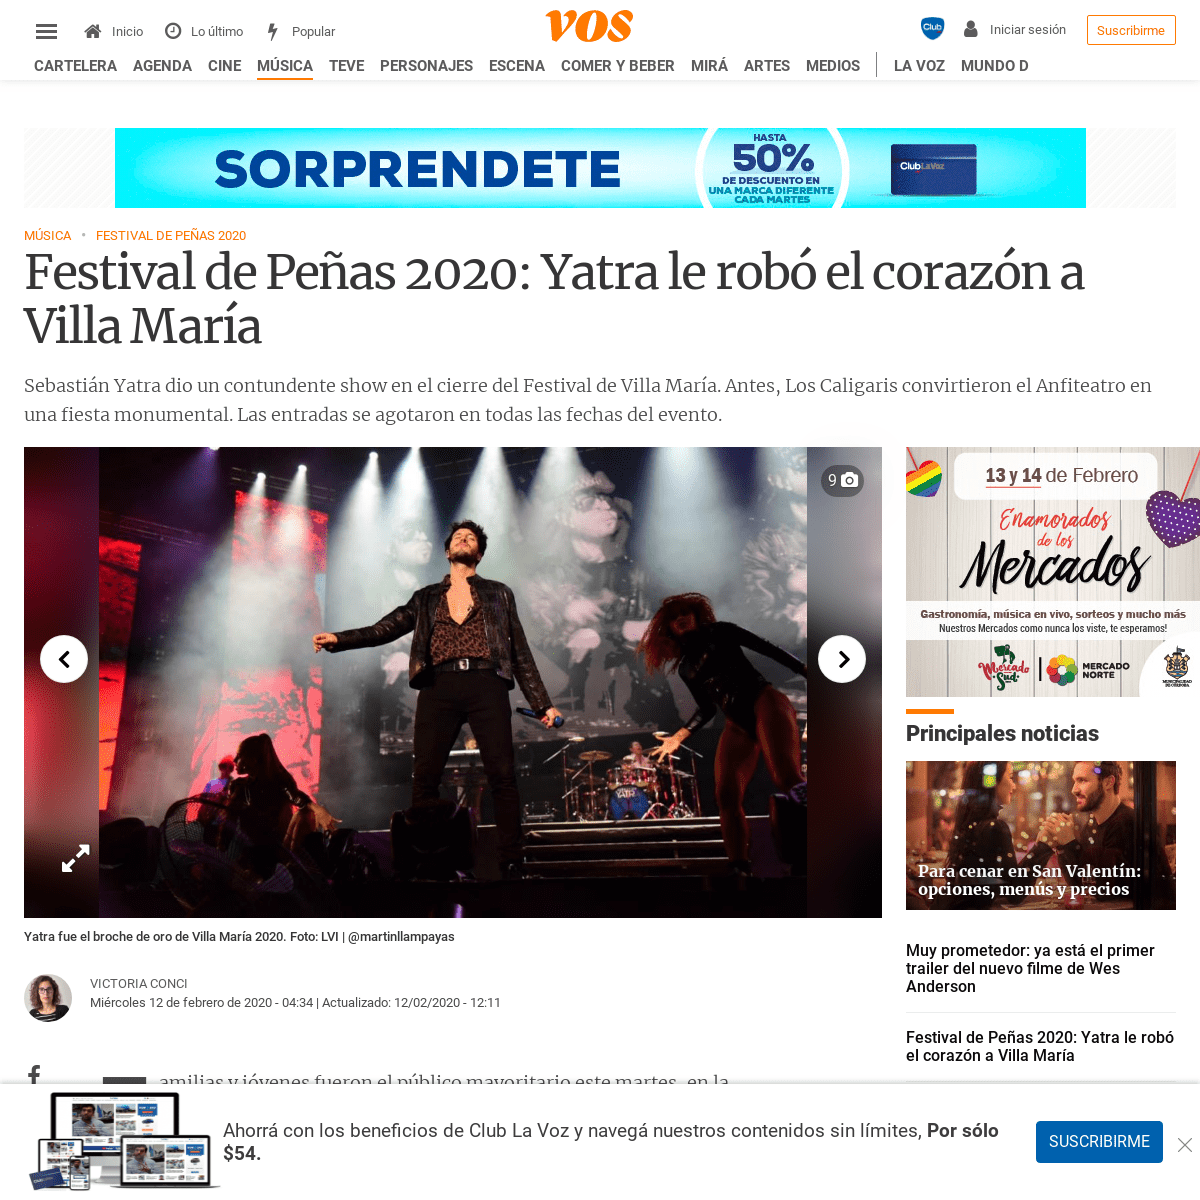 A complete backup of vos.lavoz.com.ar/musica/festival-de-penas-2020-yatra-le-robo-el-corazon-a-villa-maria